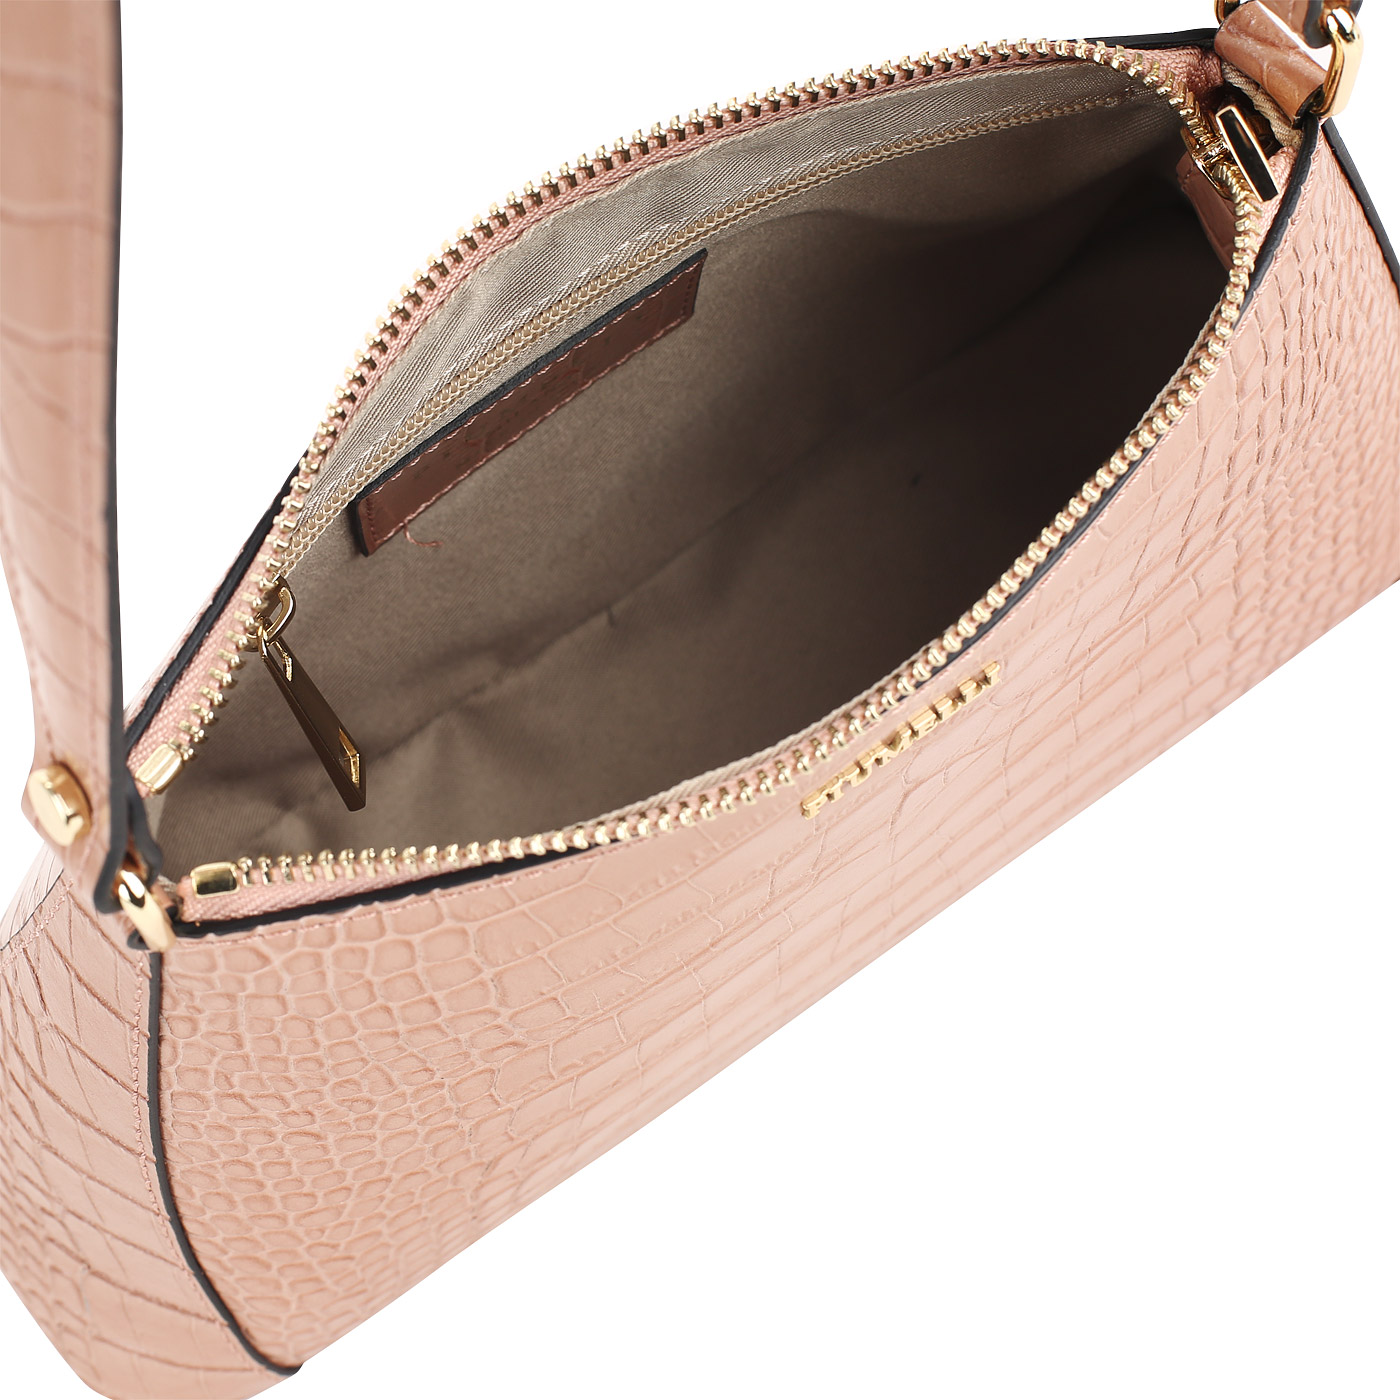 Бежево-розовая кожаная сумка Piumelli Savannah